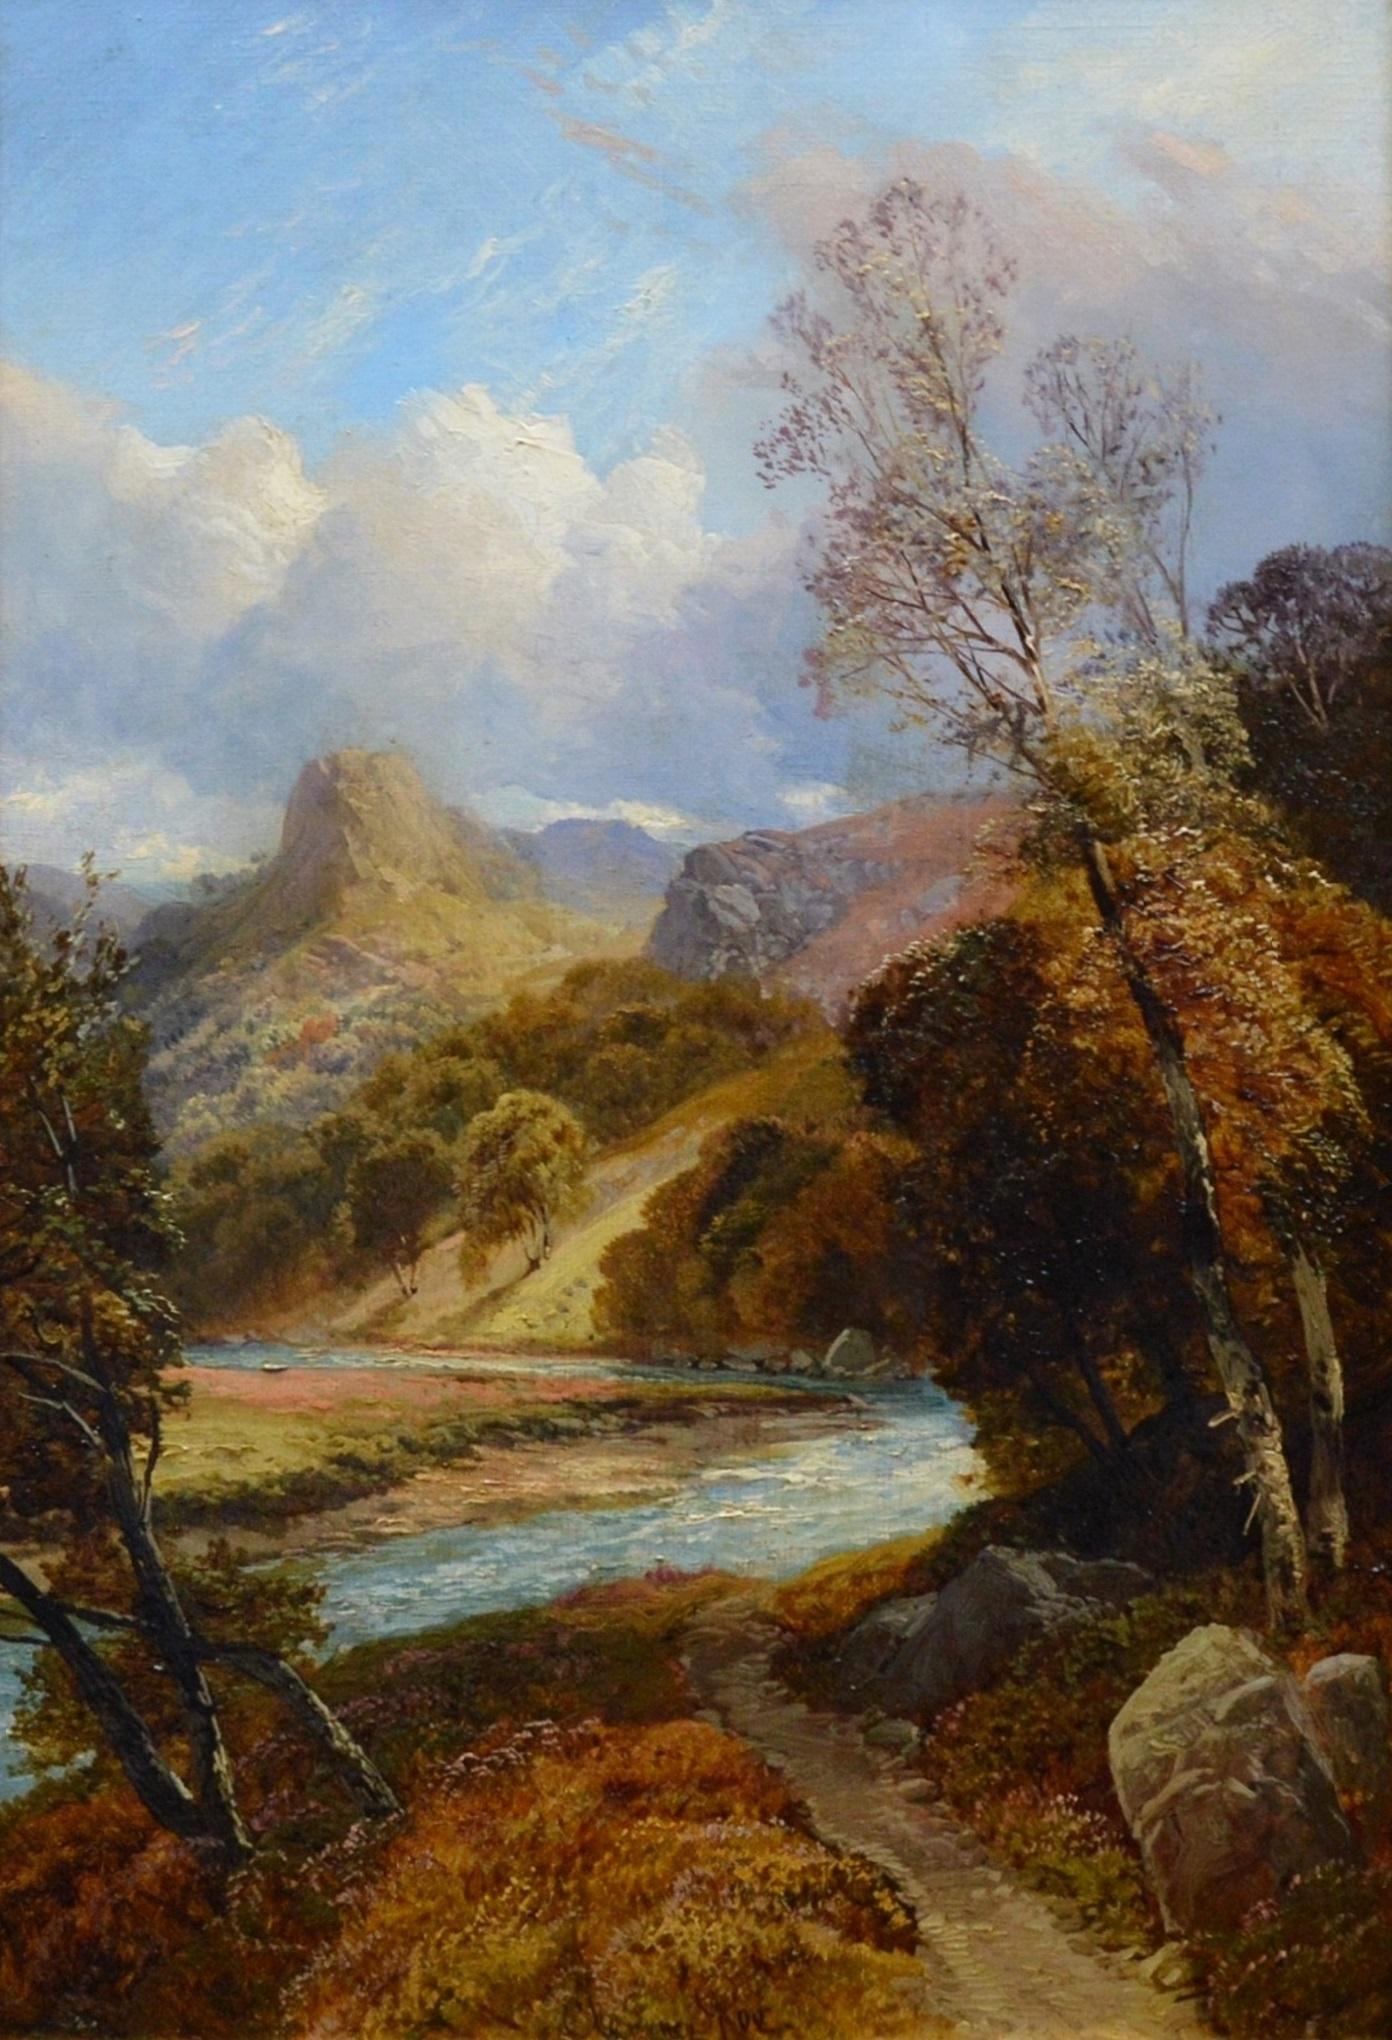 On the River Tay - Peinture à l'huile du 19ème siècle - Paysage des Highlands écossais - Victorien Painting par Clarence Roe